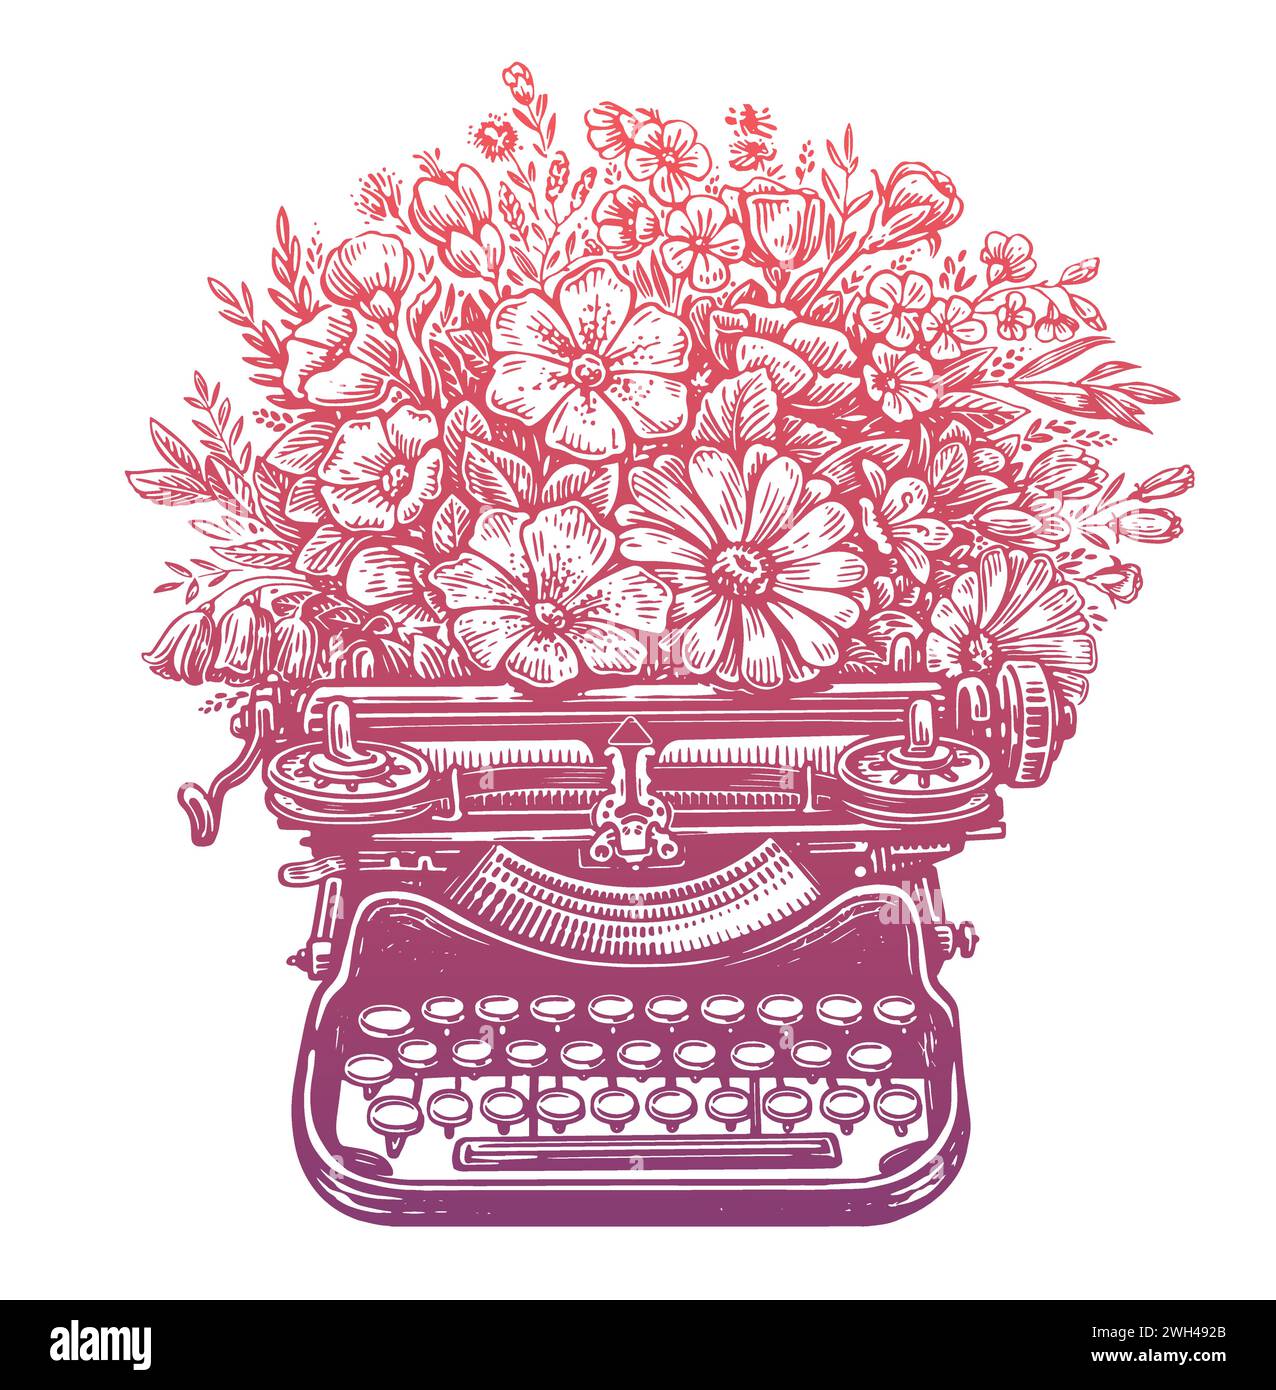 Retro-Schreibmaschine mit Blumen. Vintage-Technik mit Wildblumen. Handgezeichnete Vektorgrafik Stock Vektor